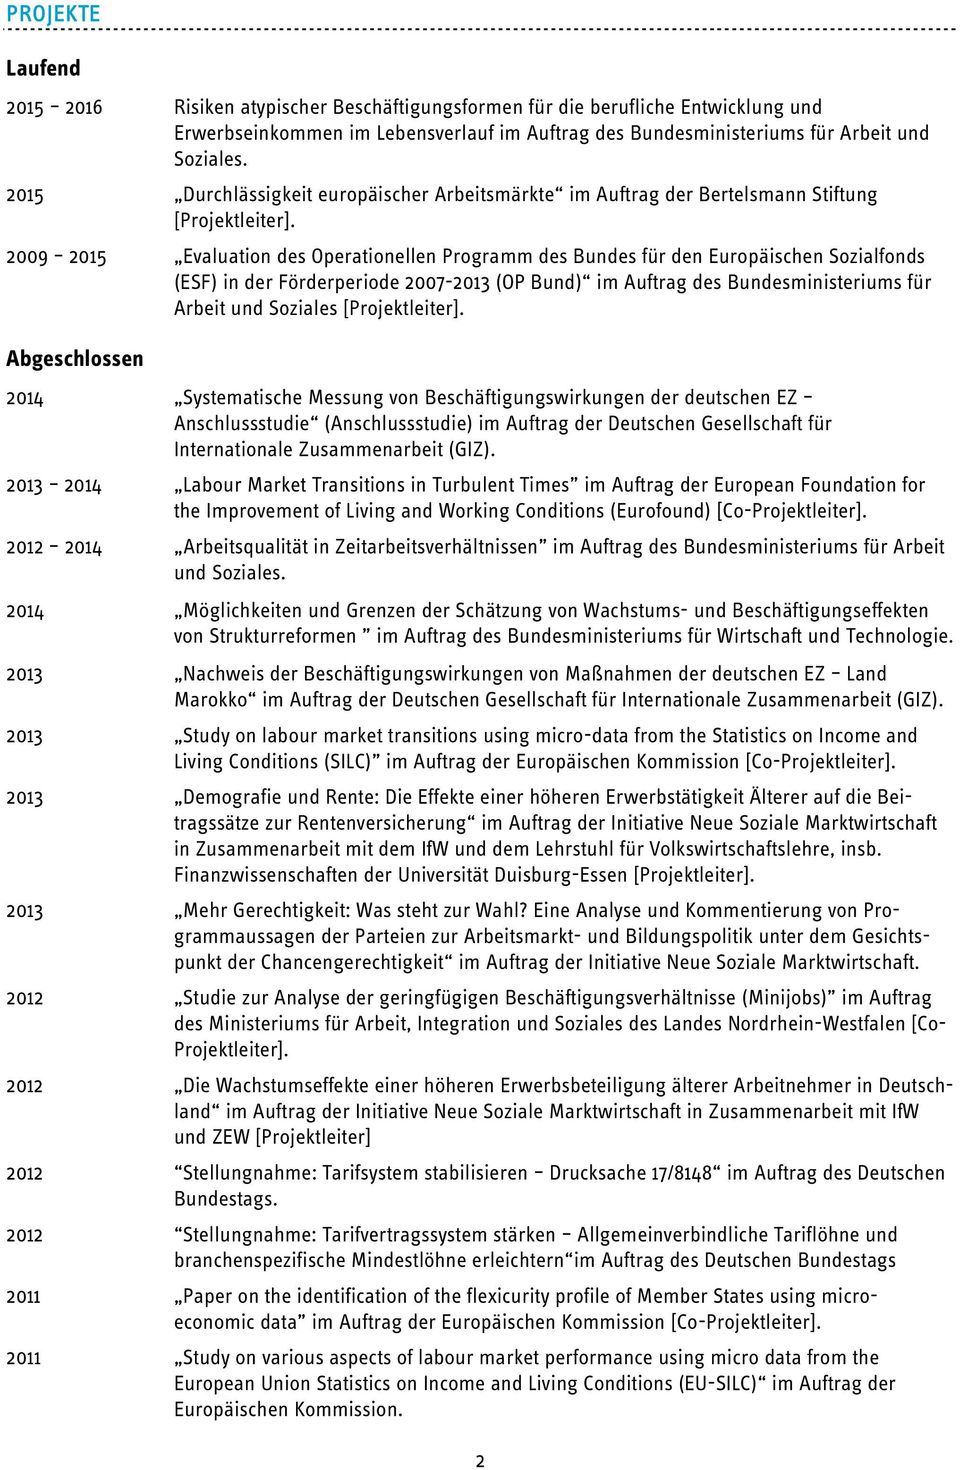 2009 2015 Evaluation des Operationellen Programm des Bundes für den Europäischen Sozialfonds (ESF) in der Förderperiode 2007-2013 (OP Bund) im Auftrag des Bundesministeriums für Arbeit und Soziales